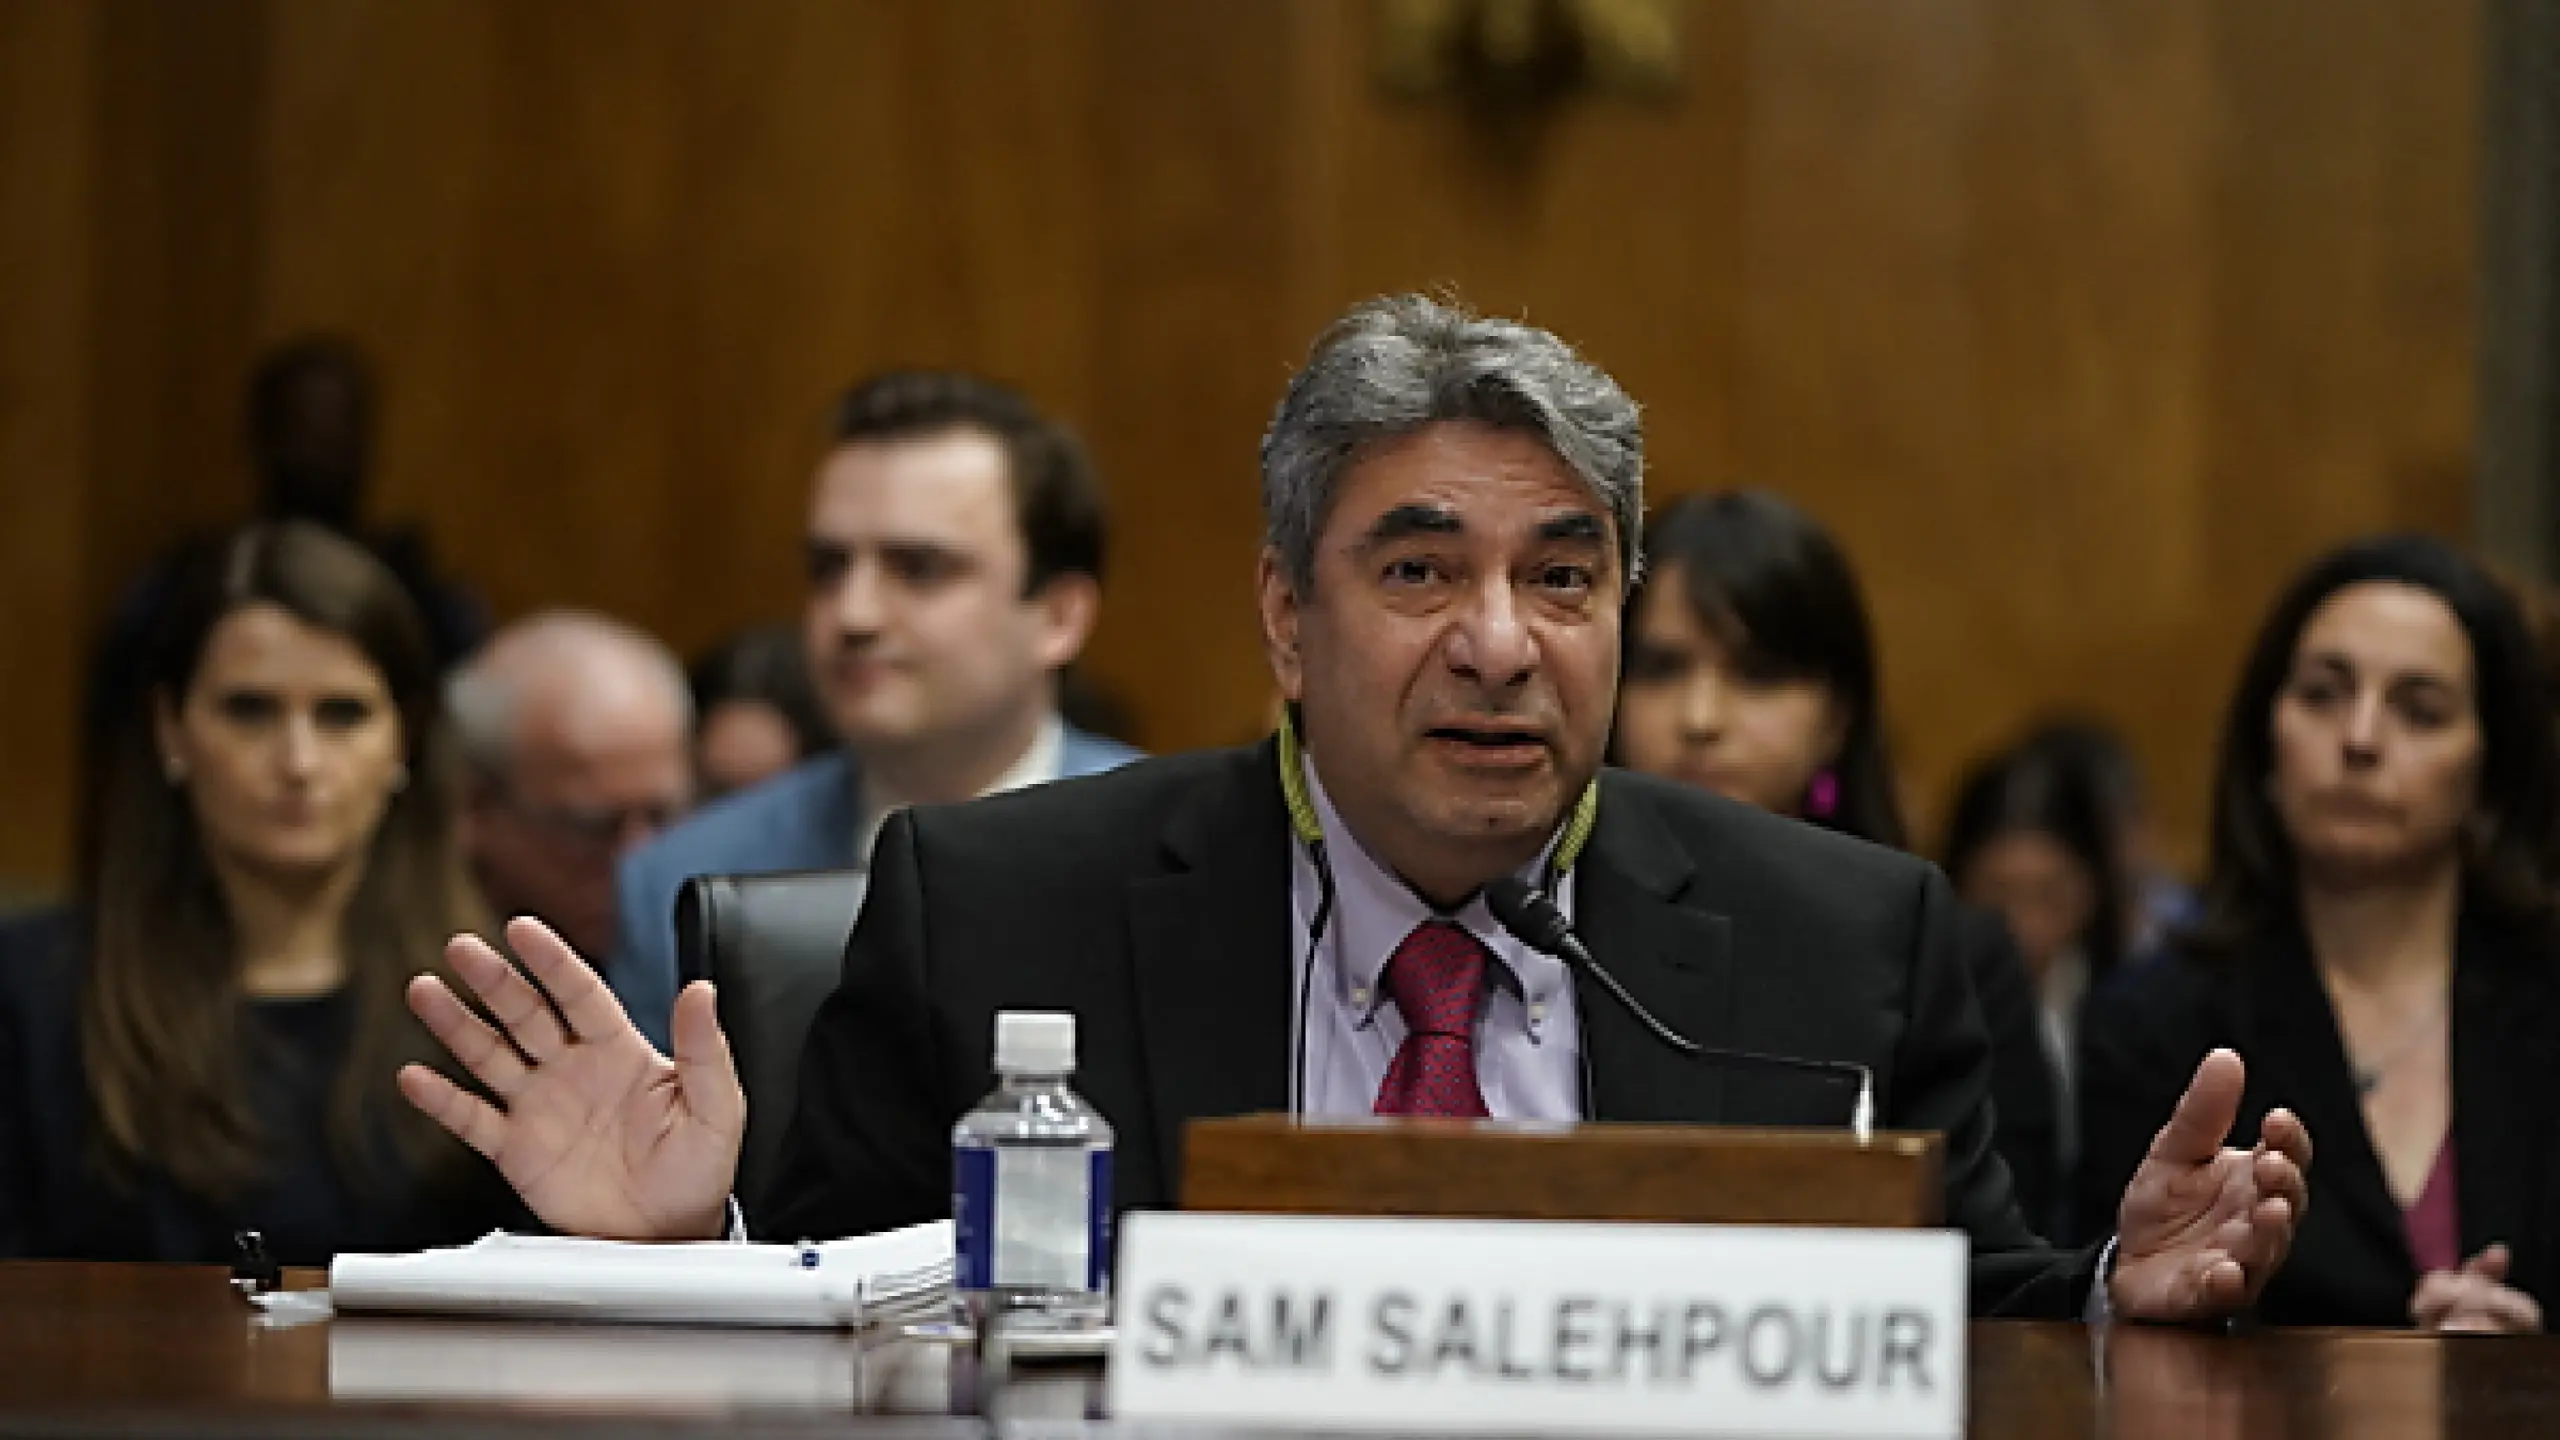 Boeing-Ingenieur Sam Salehpour belastet seinen Arbeitgeber schwer